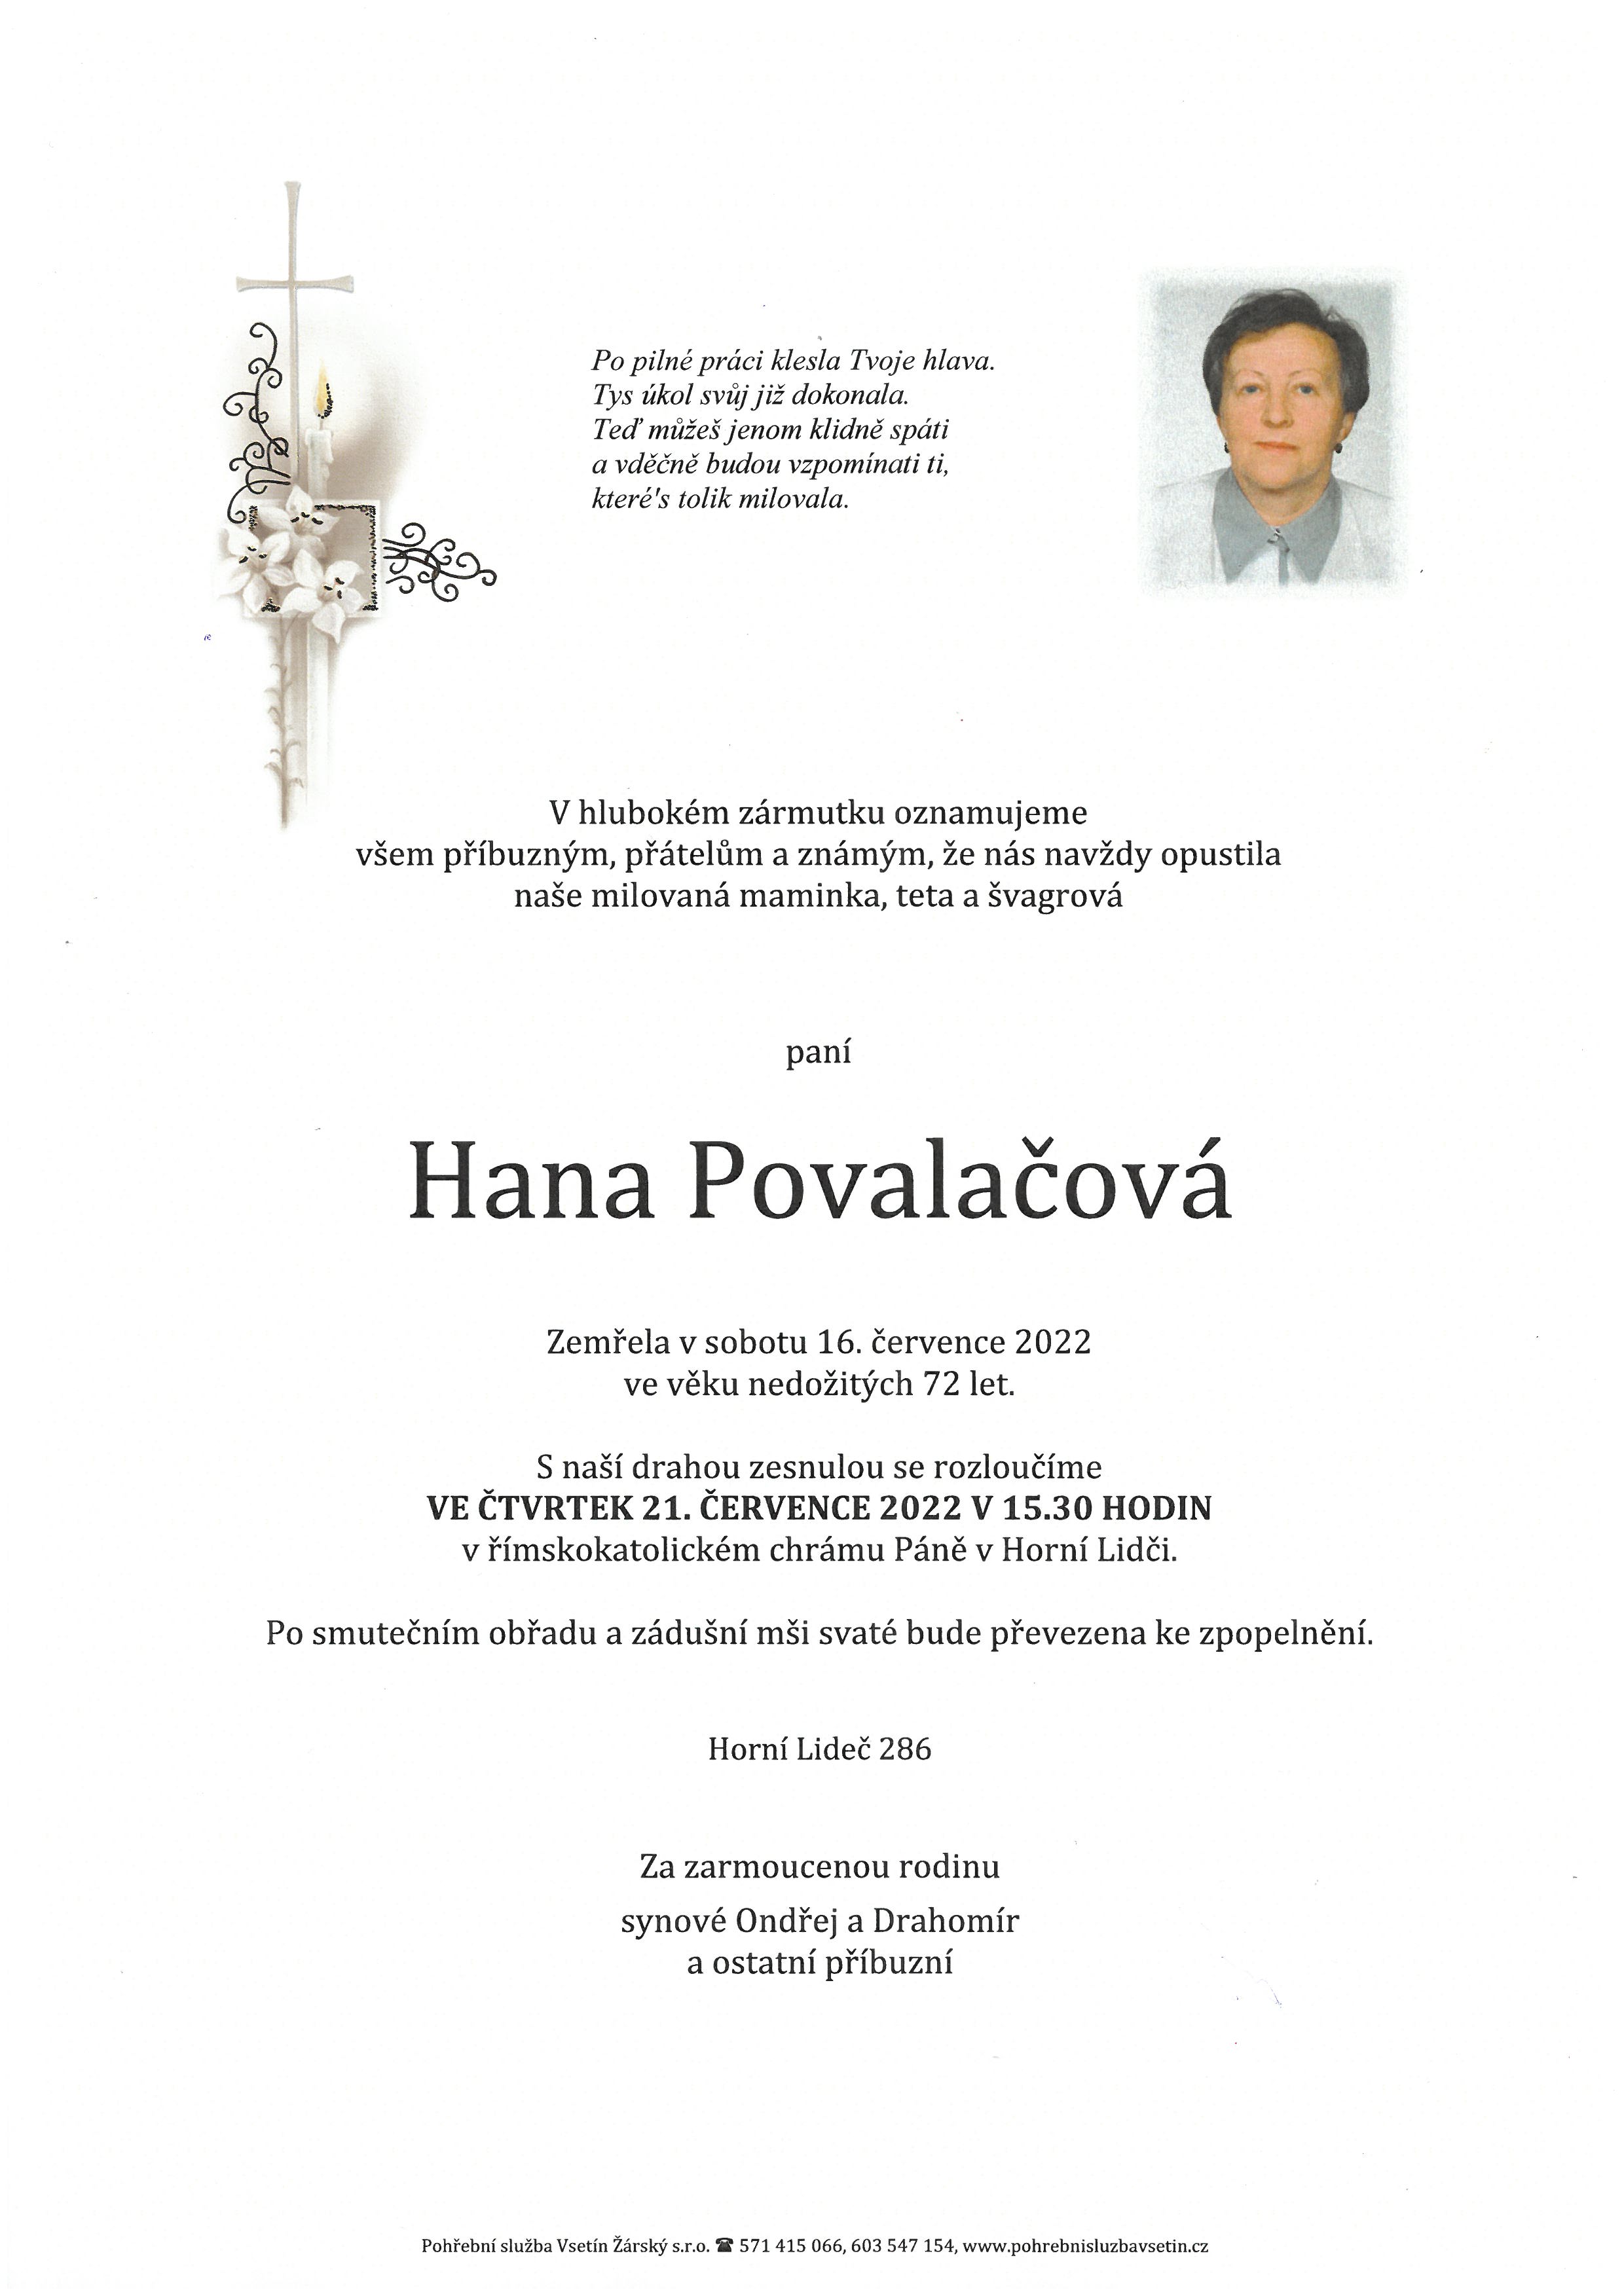 Hana Povalačová